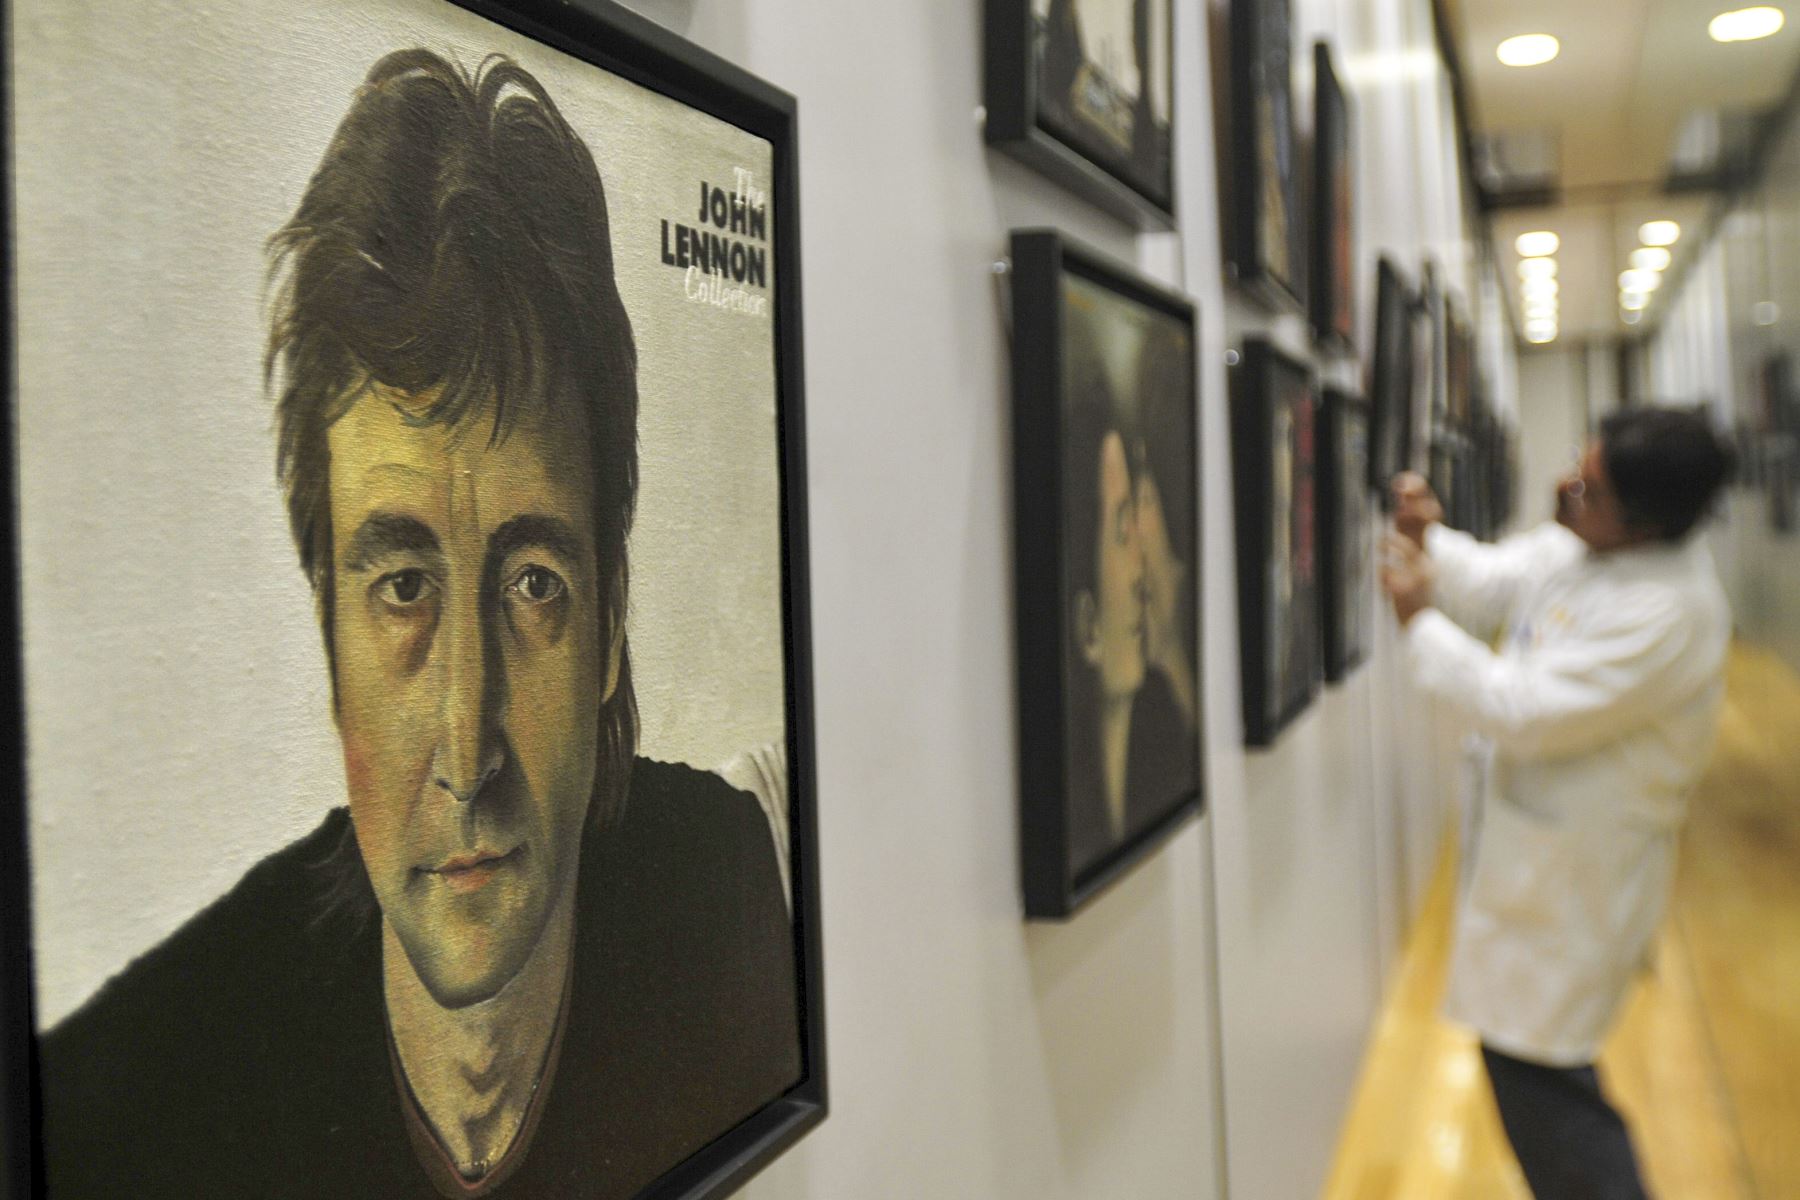 Detalle de una pintura del músico asesinado John Lennon  perteneciente a la exposición del pintor Antonio Luquin, que reproduce carátulas e imágenes relacionadas con la banda británica The Beatles.

Foto:EFE